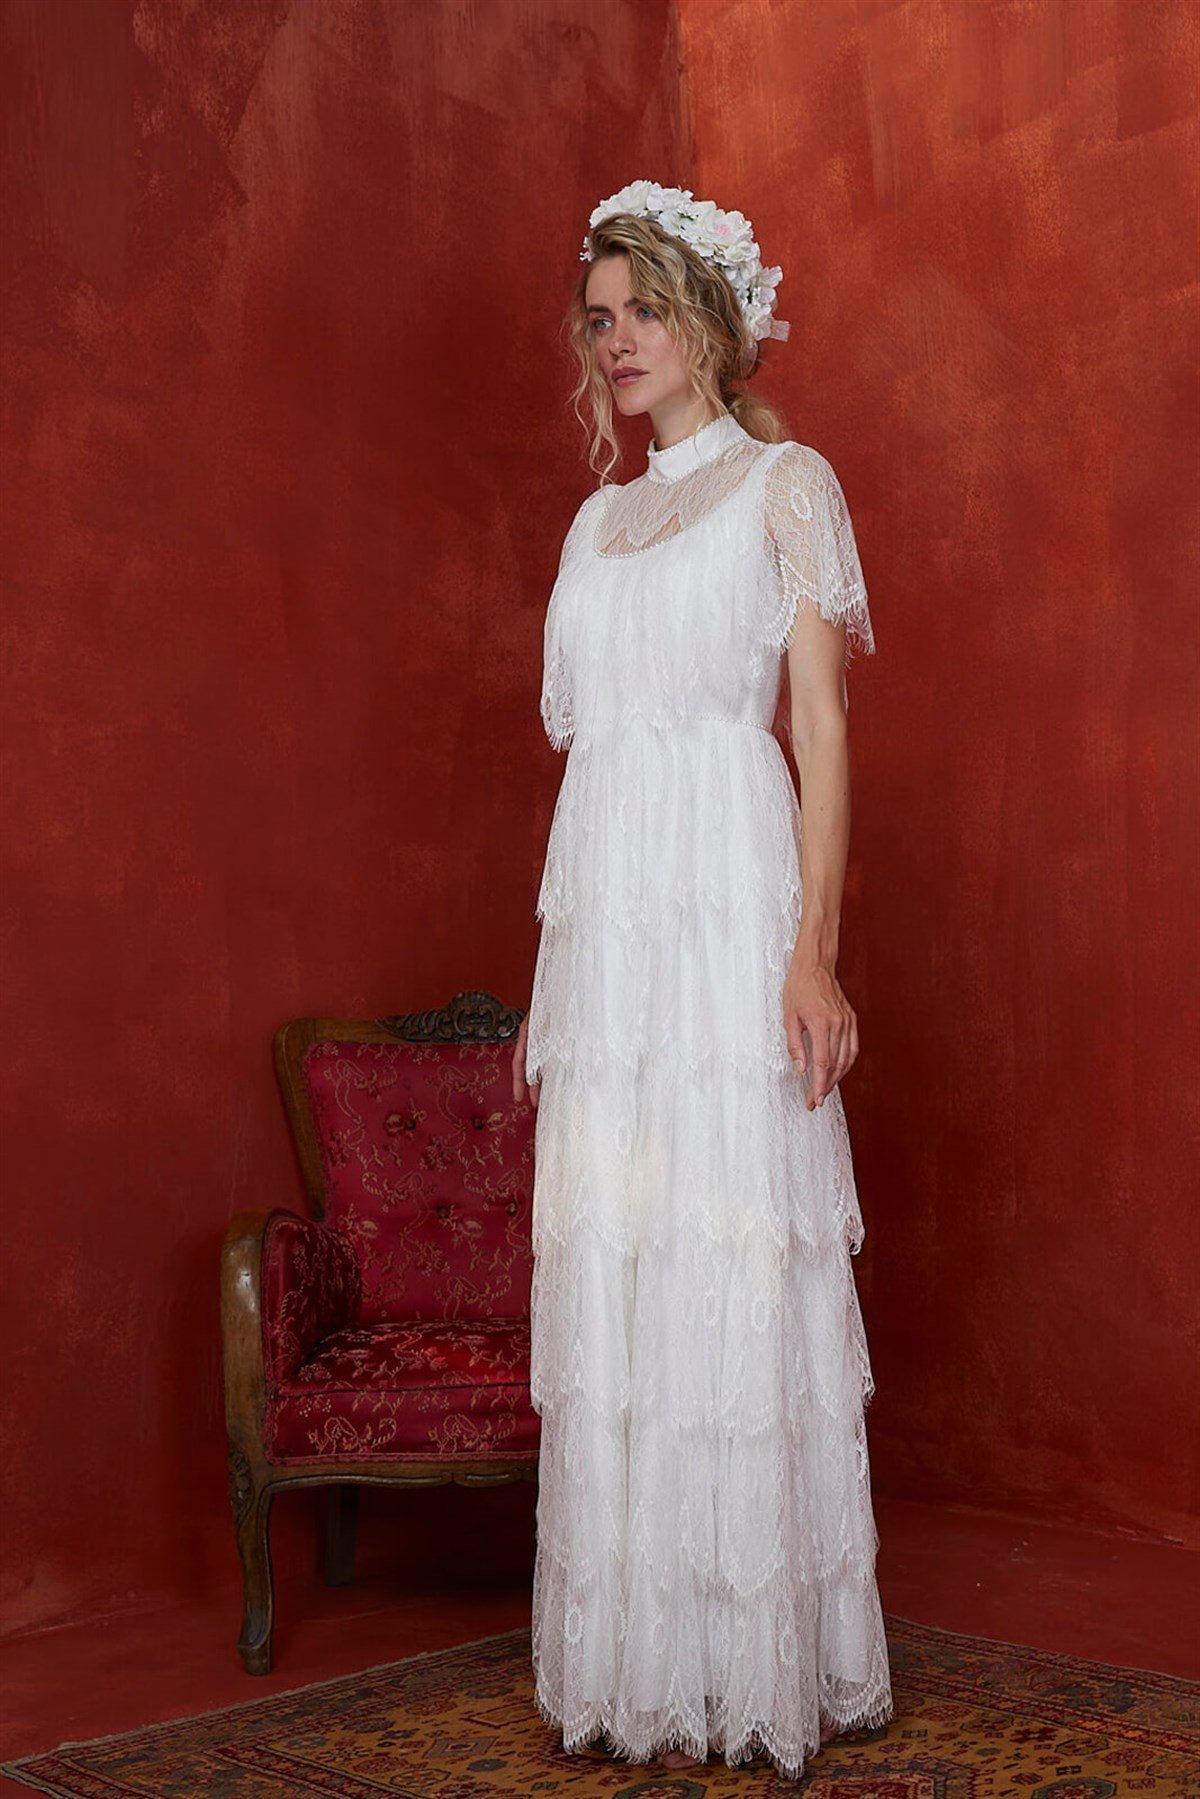 Dantel Katlı Romantik Elbise │ JAQAR 2020 White Koleksiyonu - Tesettür Giyim